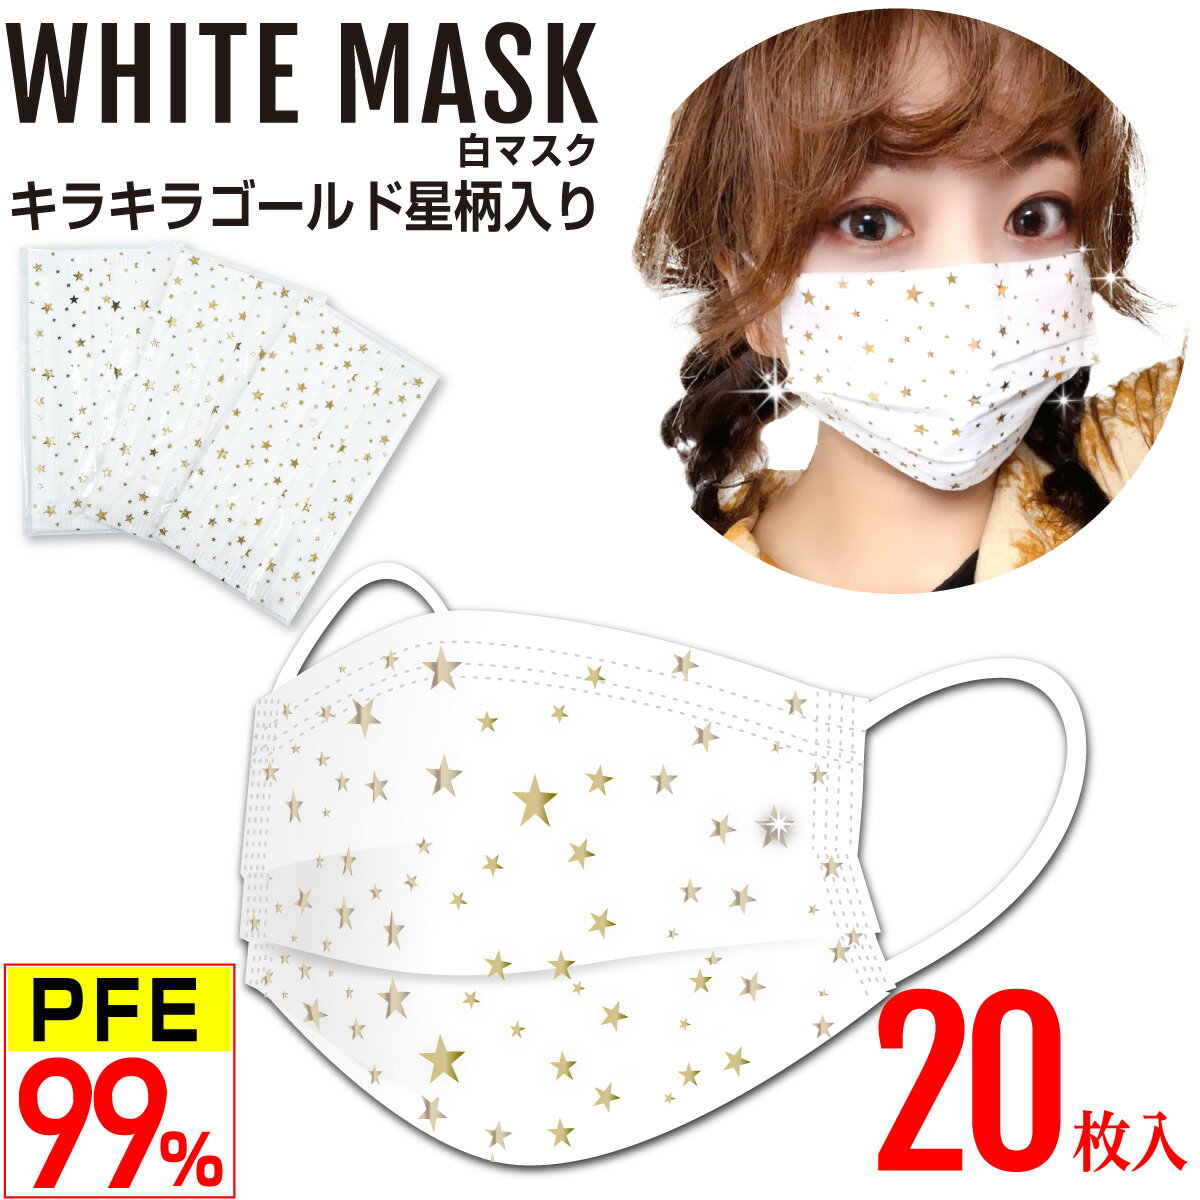 星柄 白マスク キラキラ金(ゴールド)  不織布マスク 4層 PFE99%以上 PM2.5対応 高性能フィルター 個別包装 20枚入 男女兼用 使い捨て おしゃれマスク